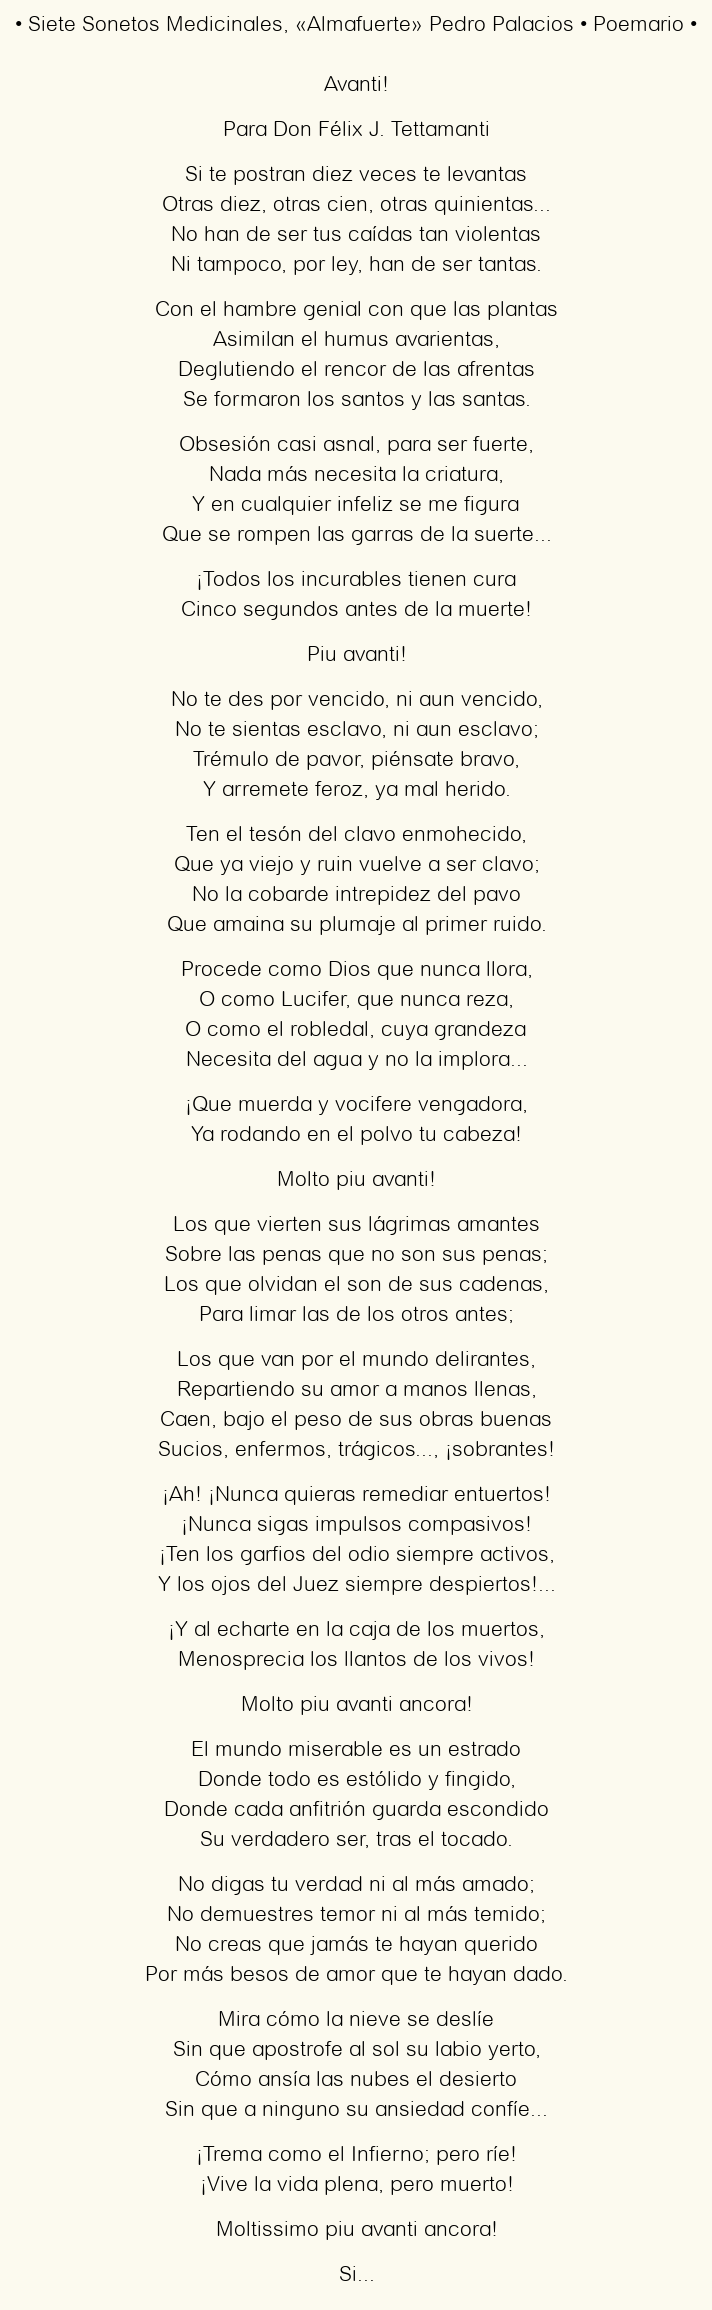 Imagen con el poema Siete Sonetos Medicinales, por Almafuerte (Pedro B. Palacios)